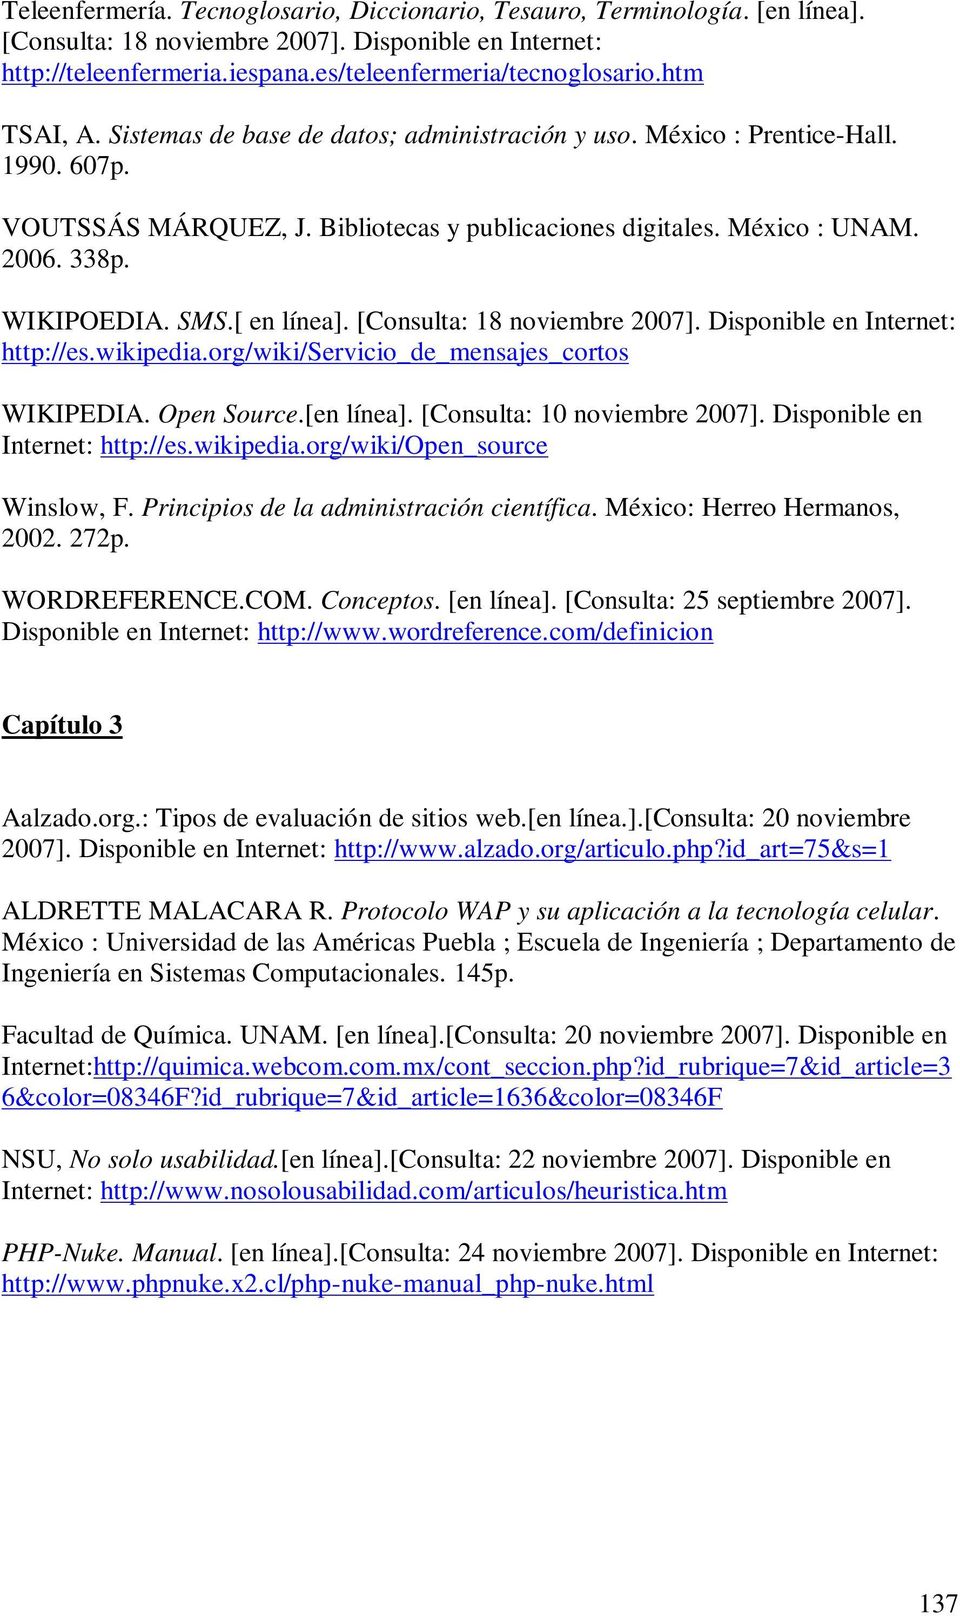 SMS.[ en línea]. [Consulta: 18 noviembre 2007]. Disponible en Internet: http://es.wikipedia.org/wiki/servicio_de_mensajes_cortos WIKIPEDIA. Open Source.[en línea]. [Consulta: 10 noviembre 2007].